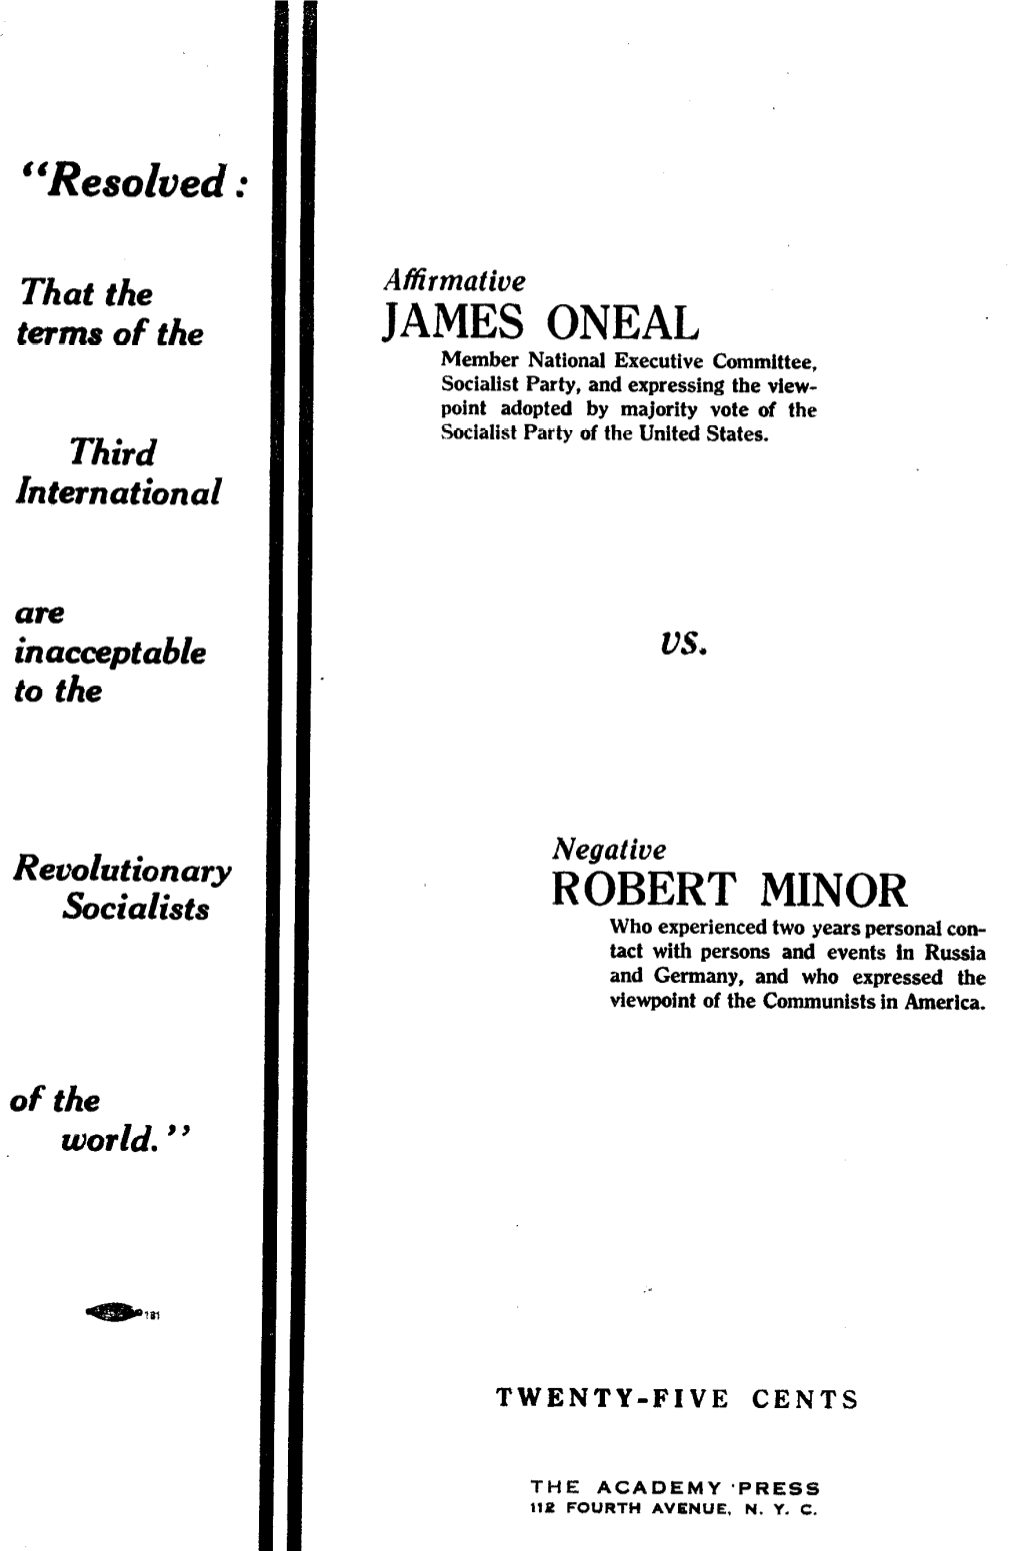 James Oneal Robert Minor